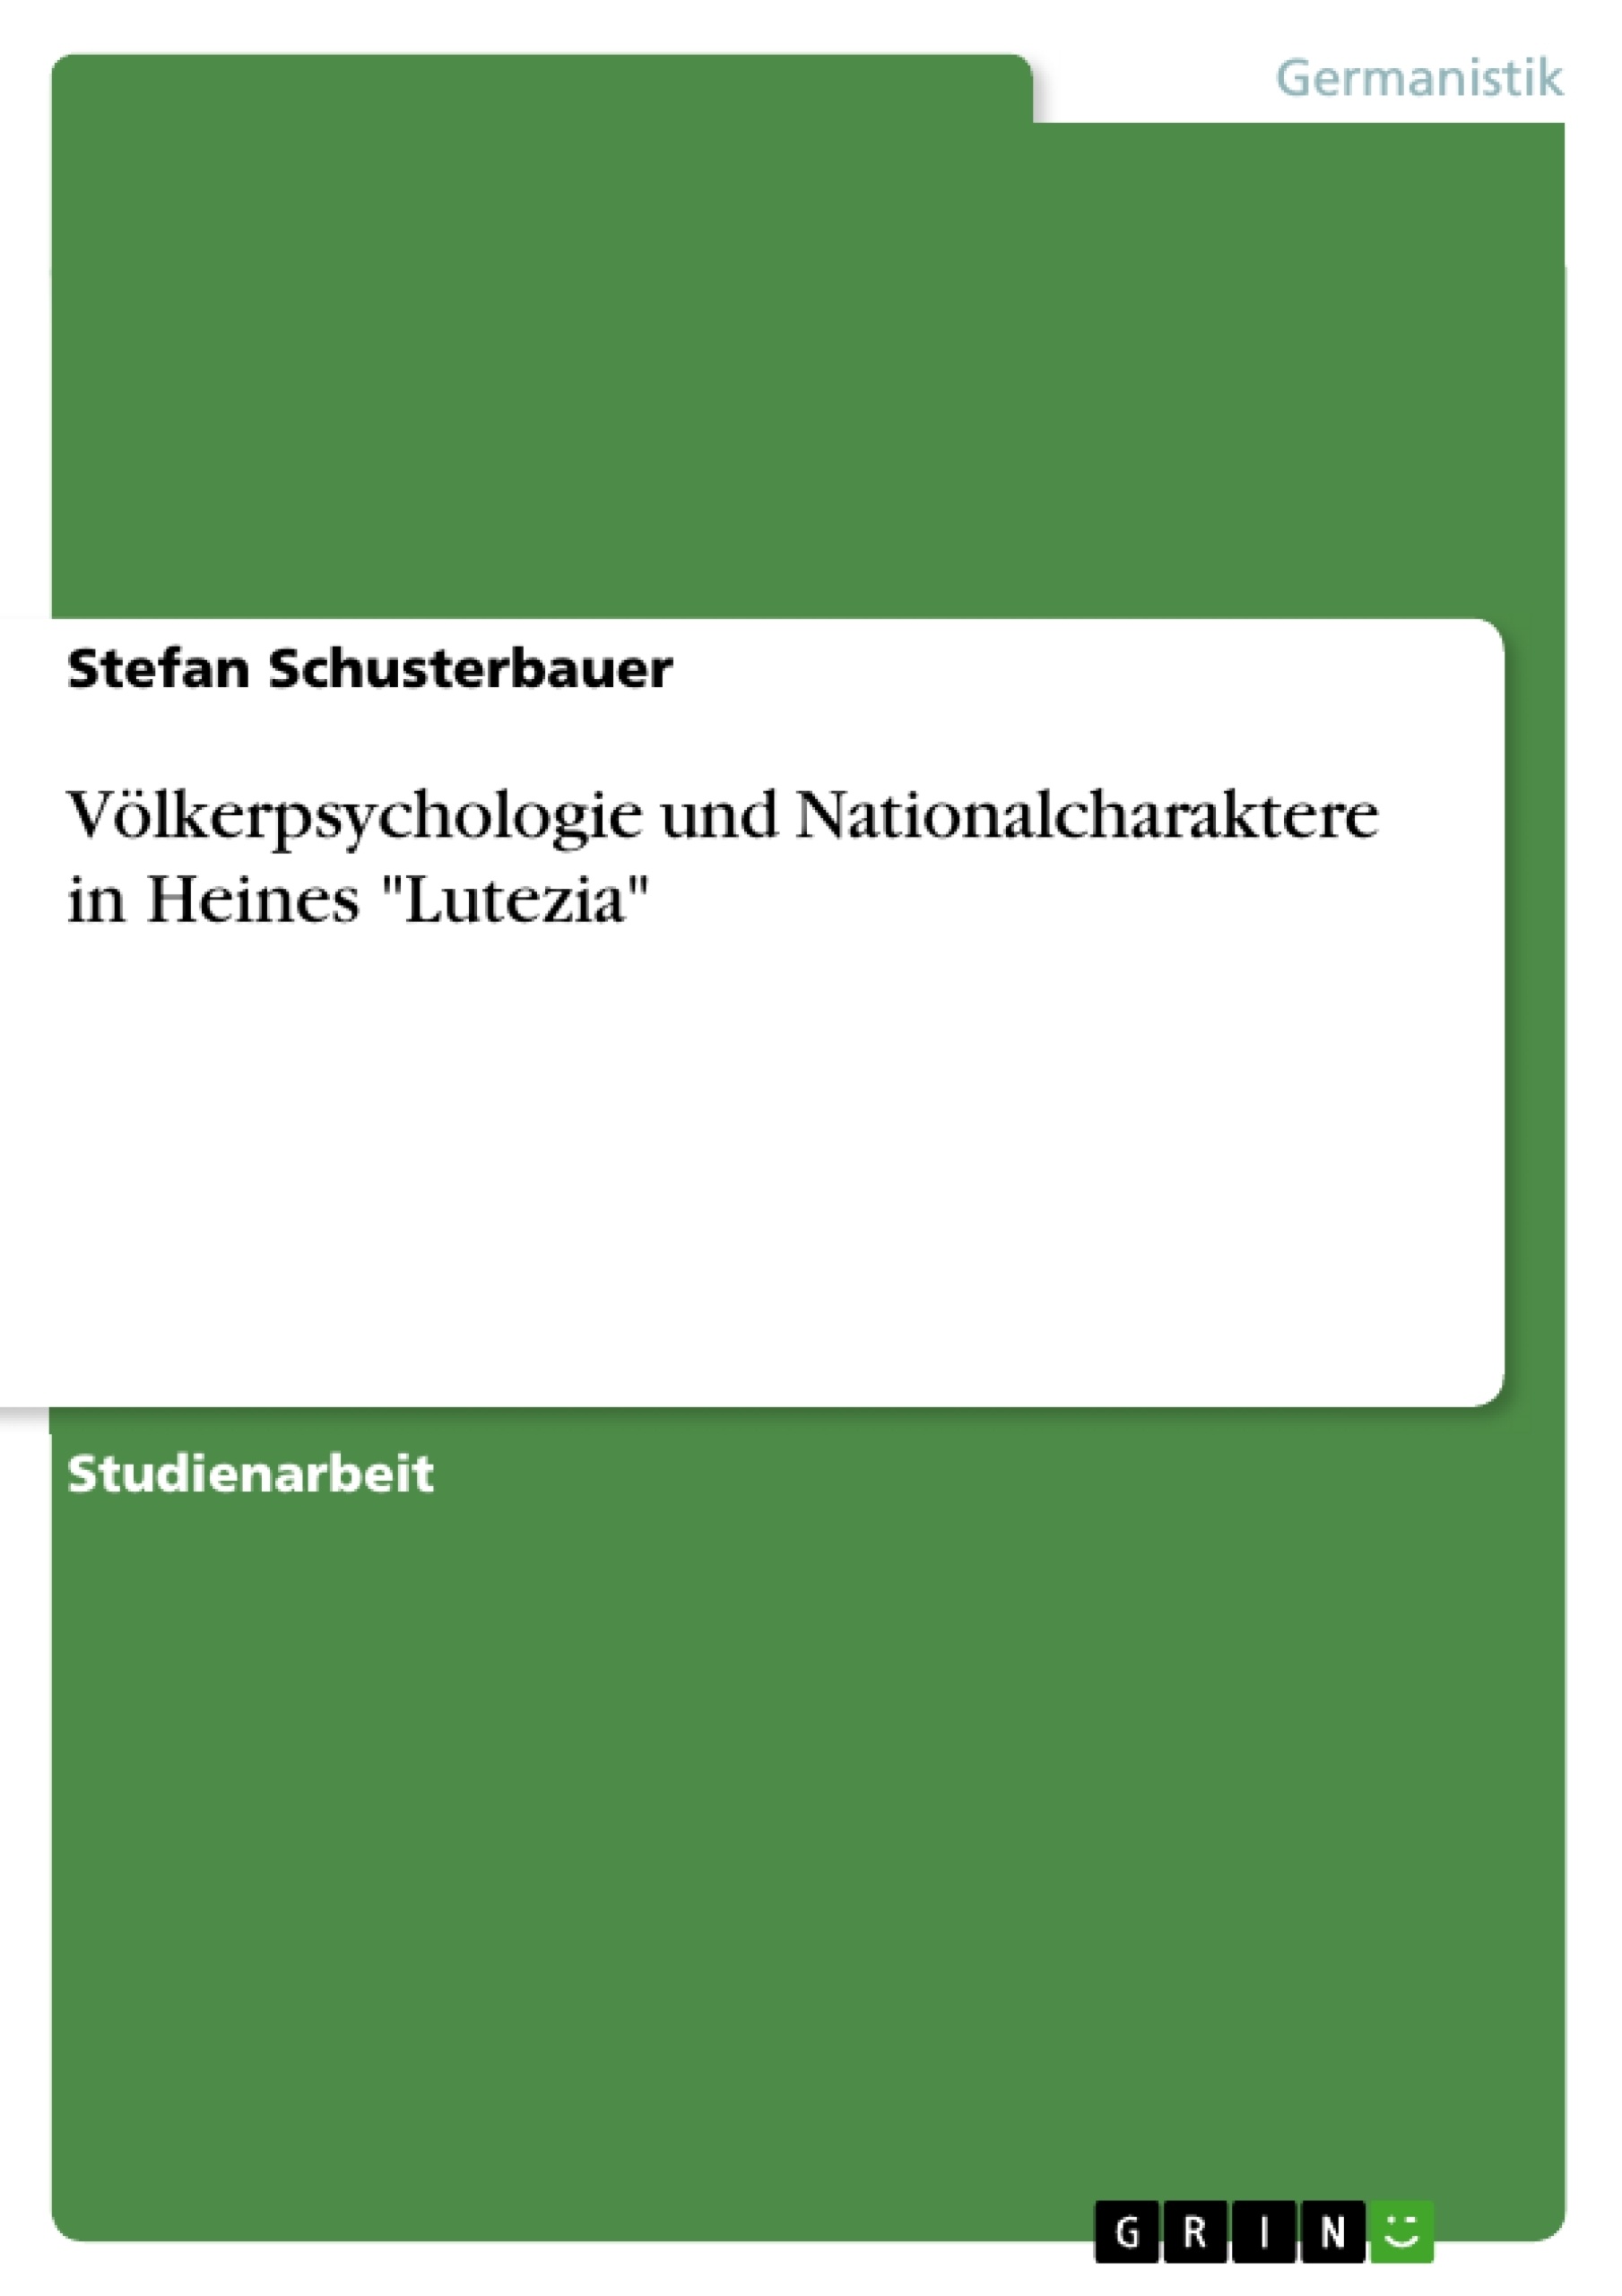 Título: Völkerpsychologie und Nationalcharaktere in Heines "Lutezia"